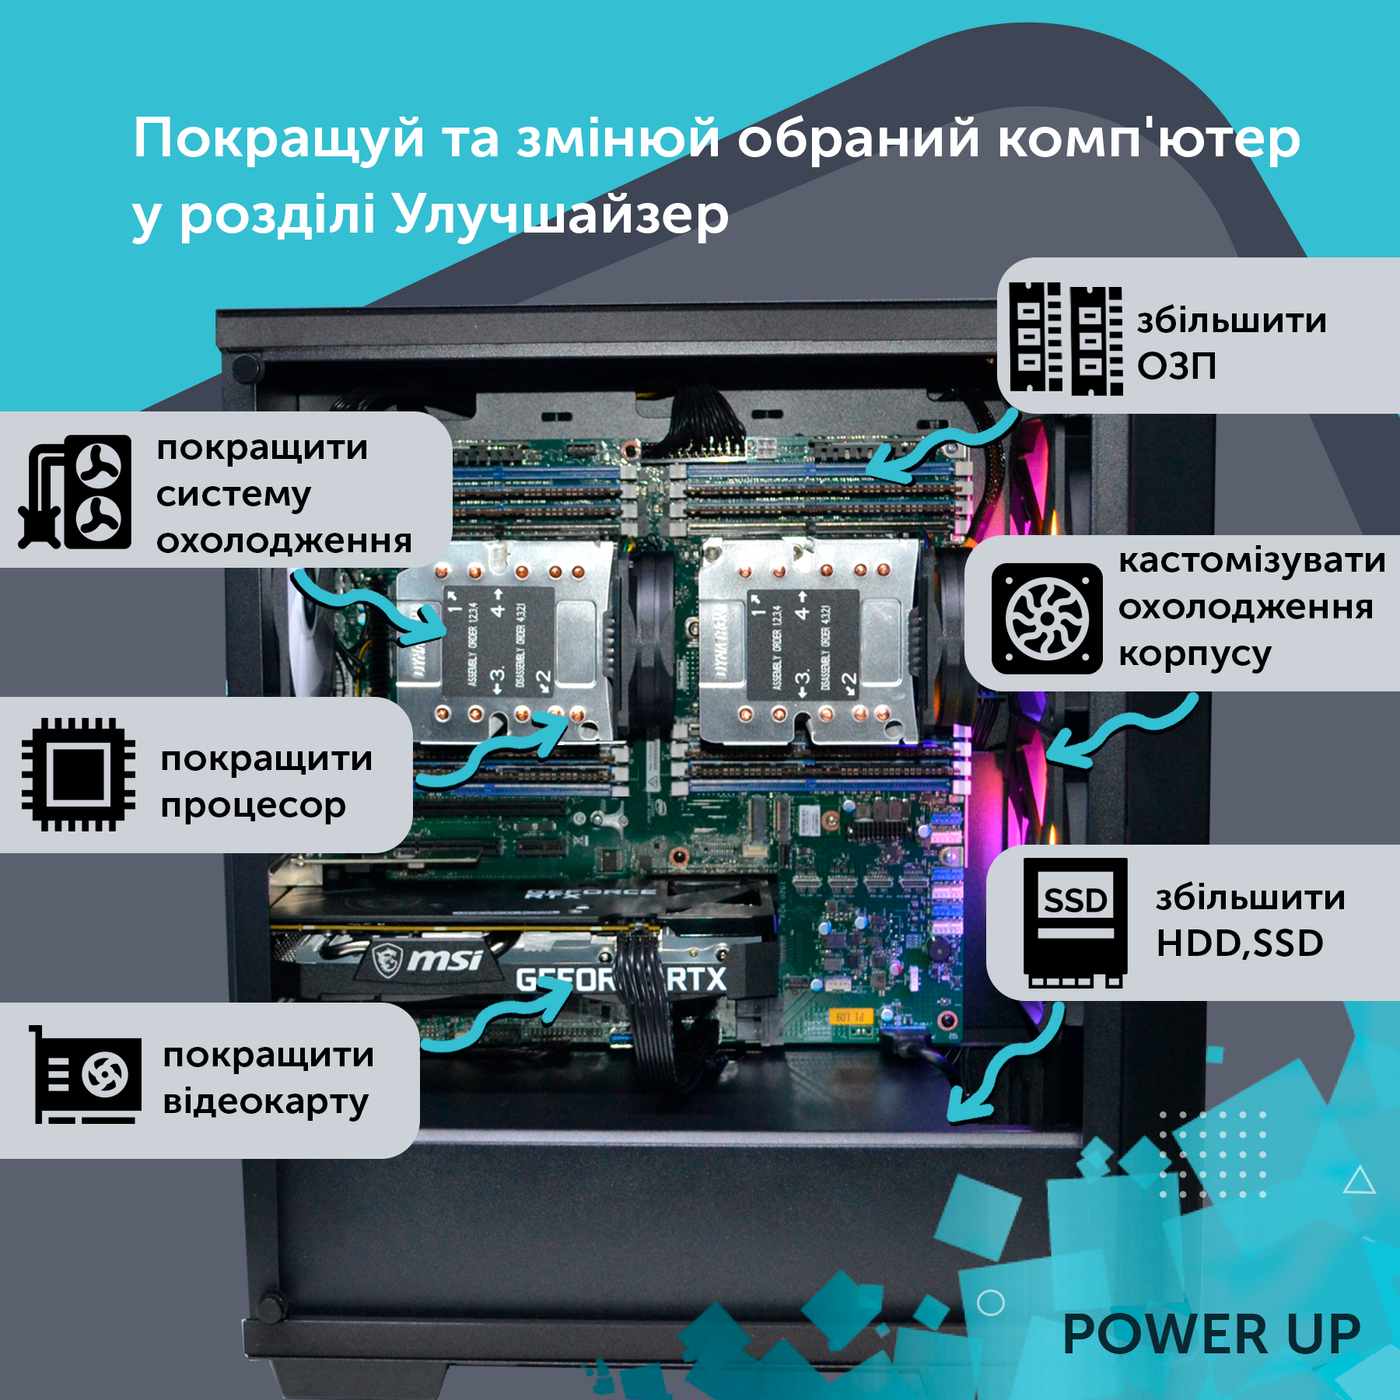 Робоча станція PowerUp Desktop #85 Ryzen 9 5950x/32GB/HDD 1TB/SSD 256GB/NVIDIA Quadro RTX A4000 16GB